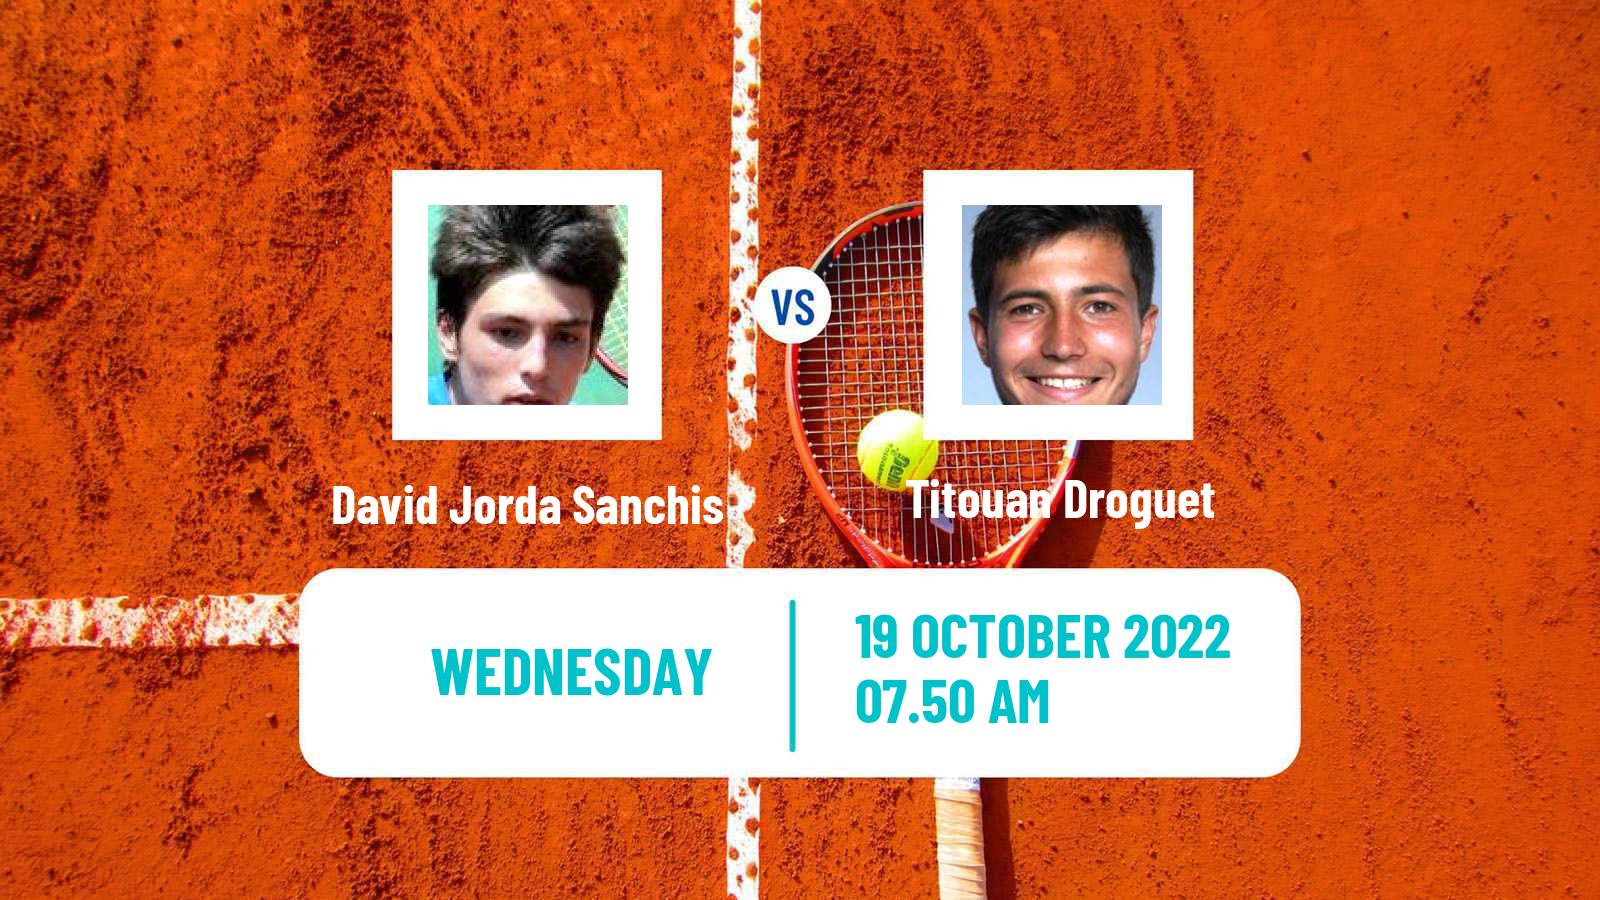 Tennis ITF Tournaments David Jorda Sanchis - Titouan Droguet